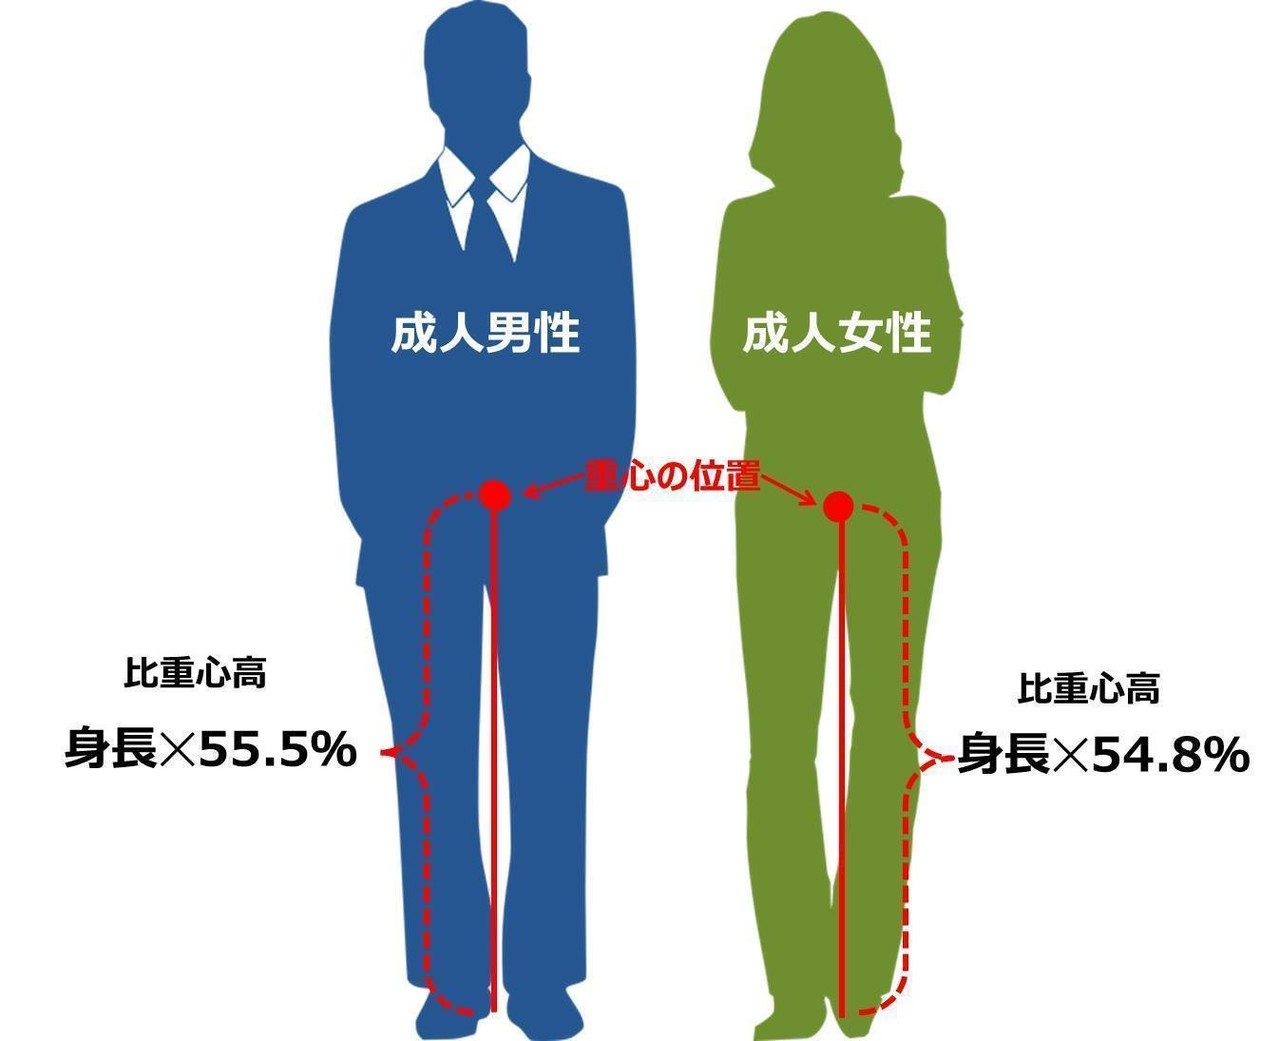 性と恋愛2021 ー日本の若者、親世代のSRHR意識調査ー を通して | 国際協力NGOジョイセフ（JOICFP）